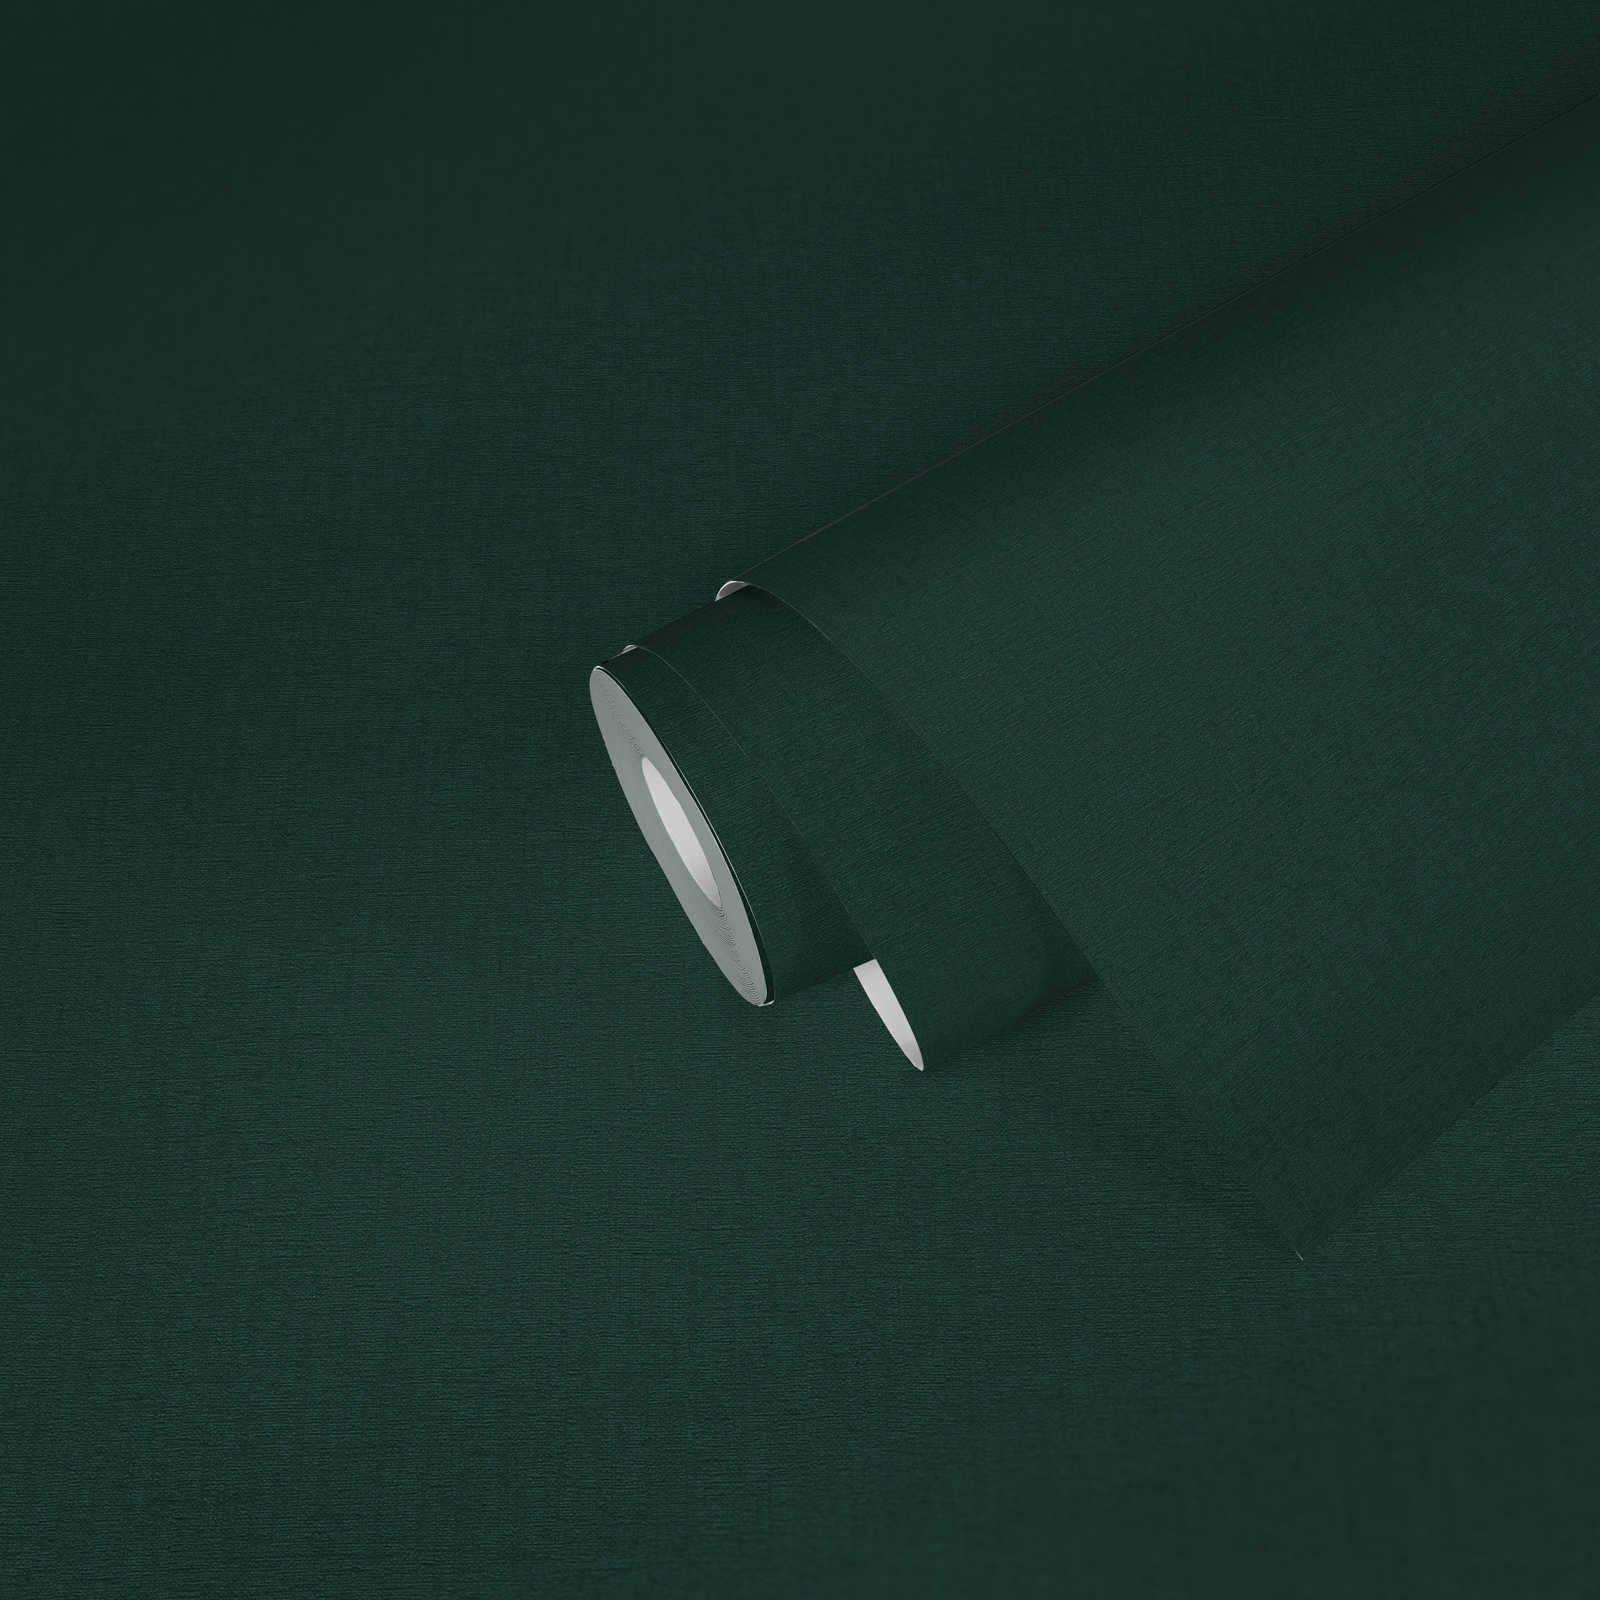             papier peint en papier uni avec structure textile mat - vert, vert foncé
        